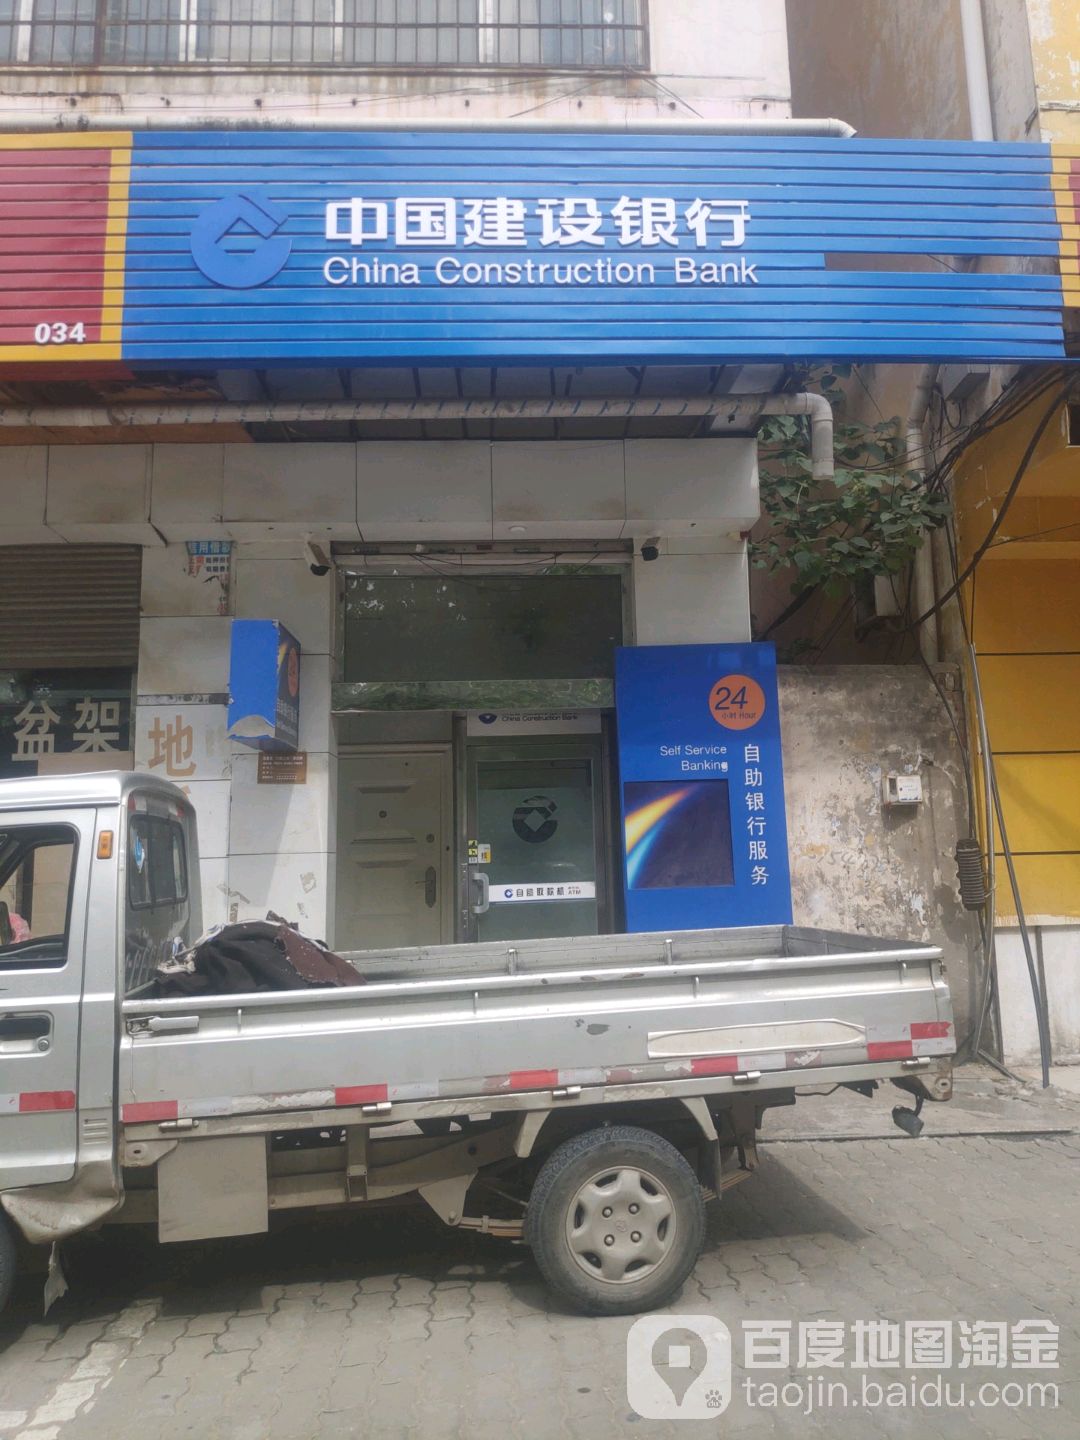 中國建設銀行24小時自助銀行(人民路店)